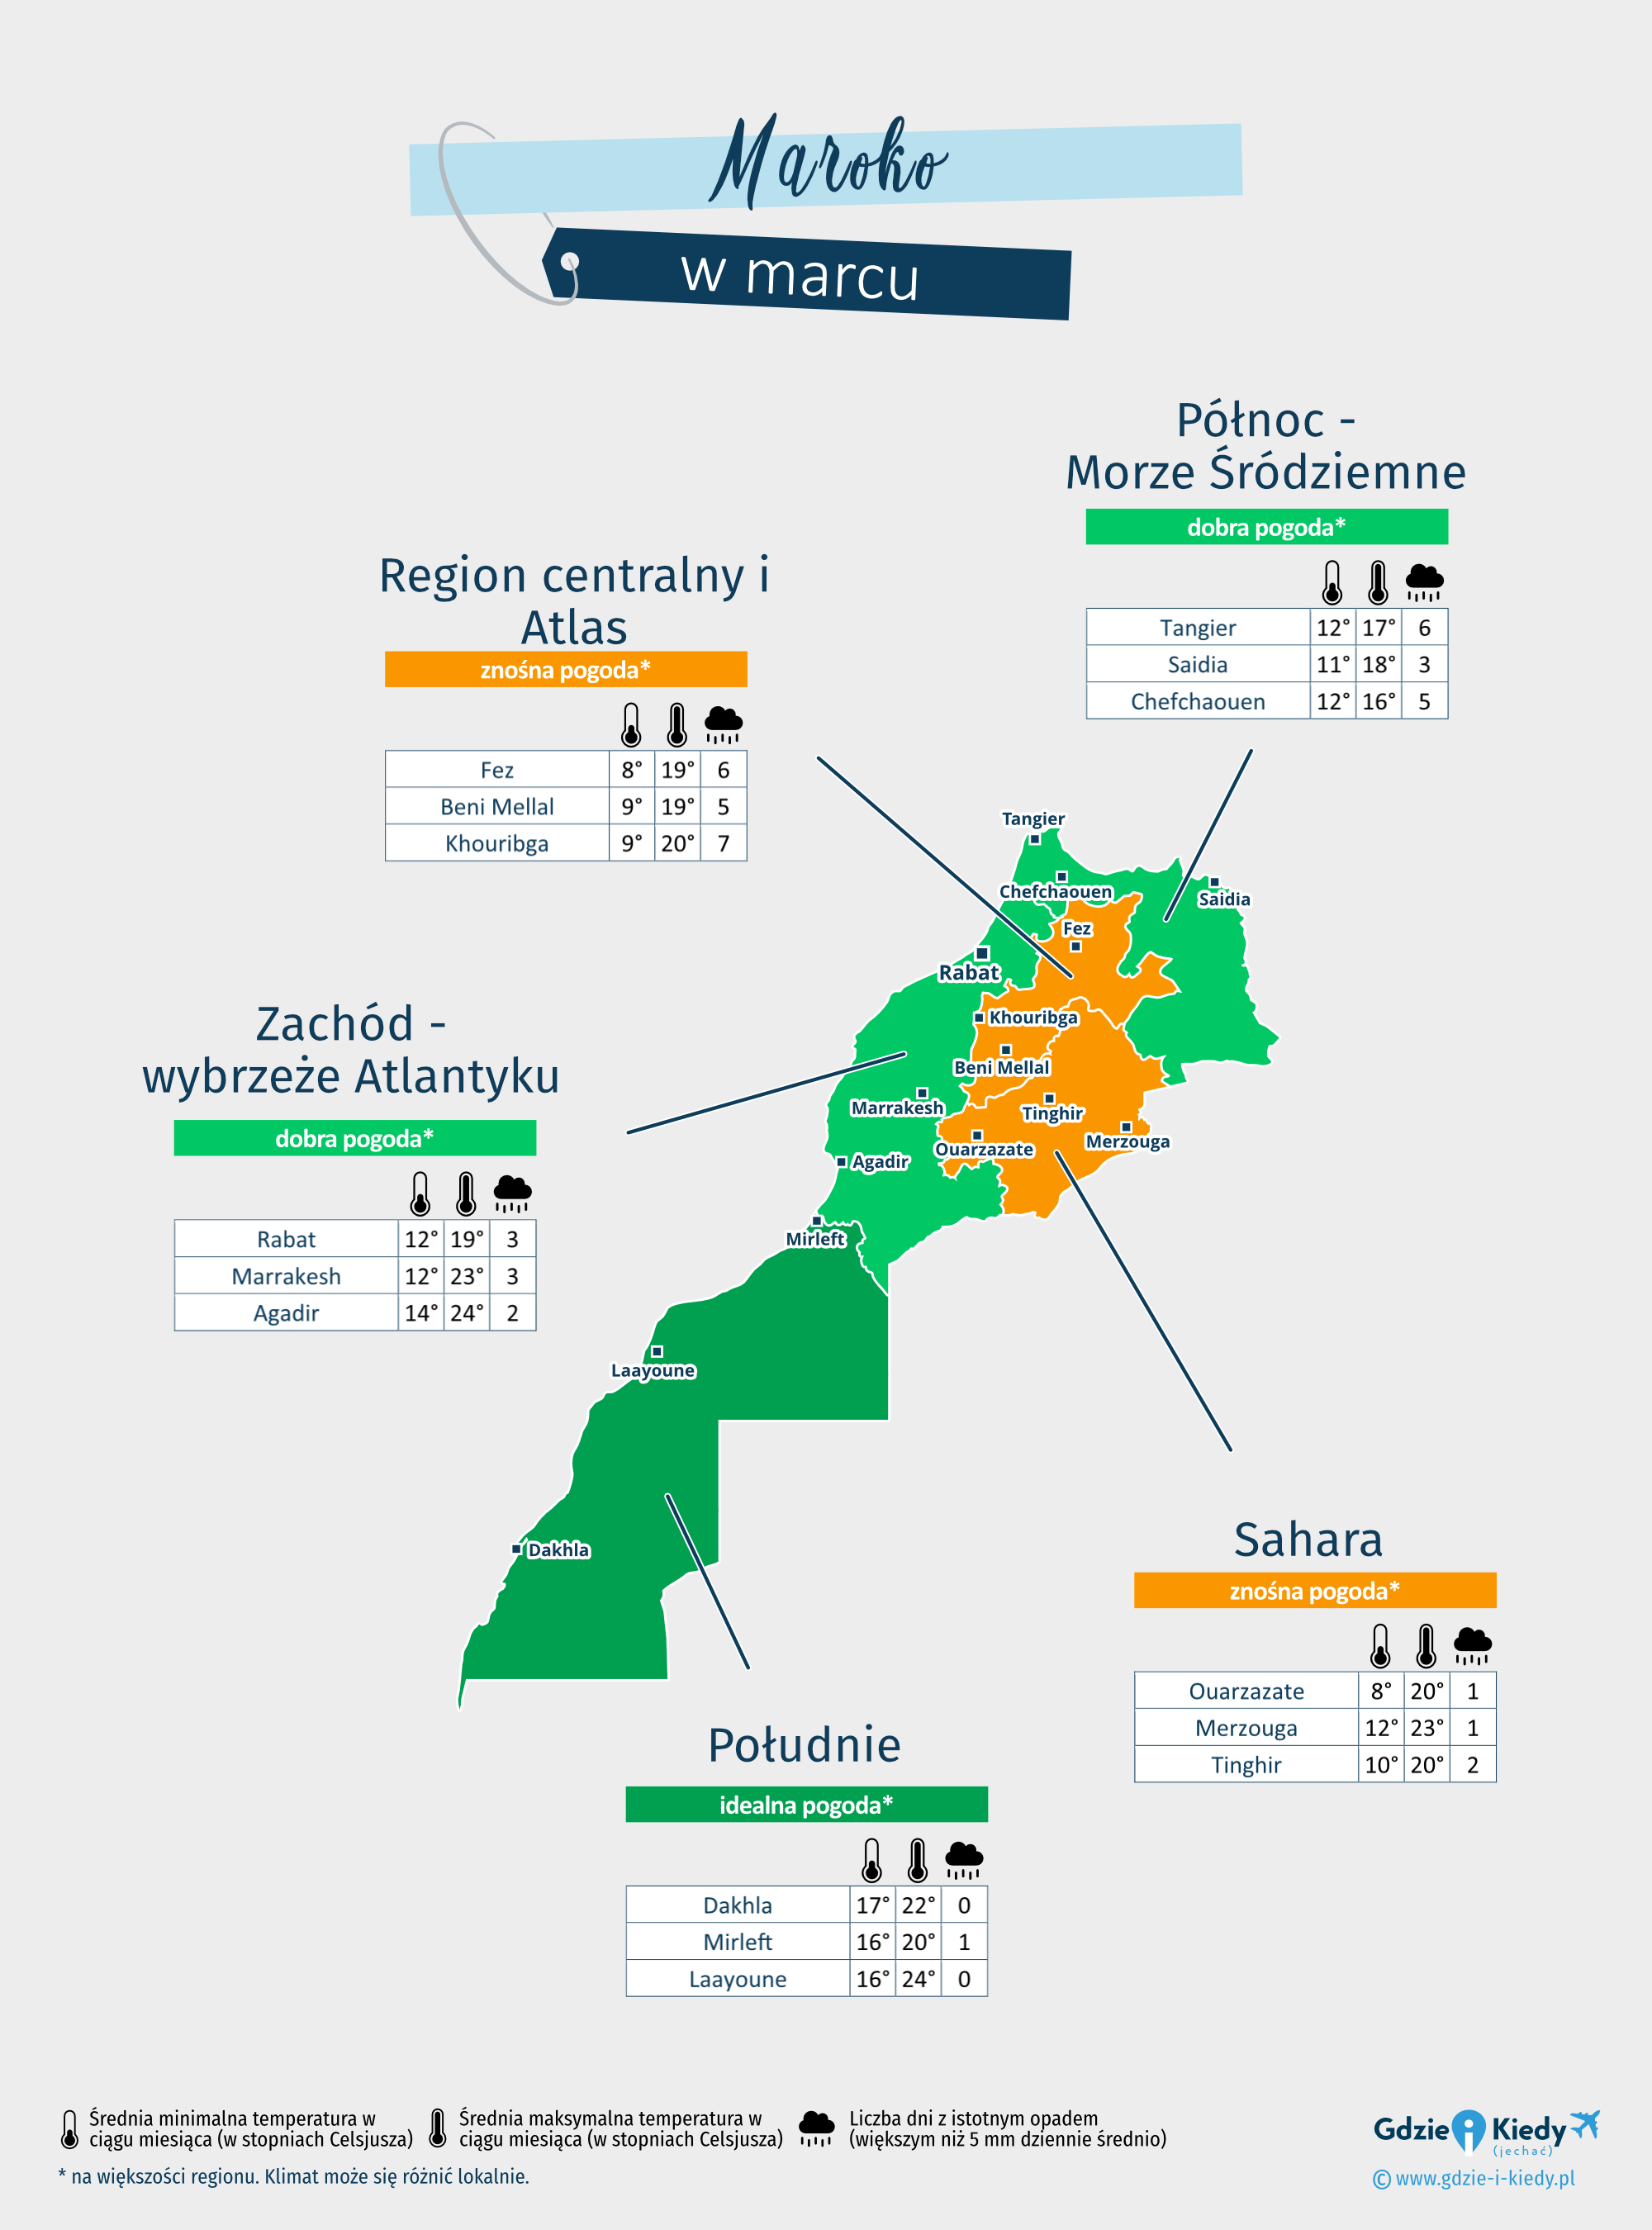 Maroko: mapa pogody w marcu w różnych regionach